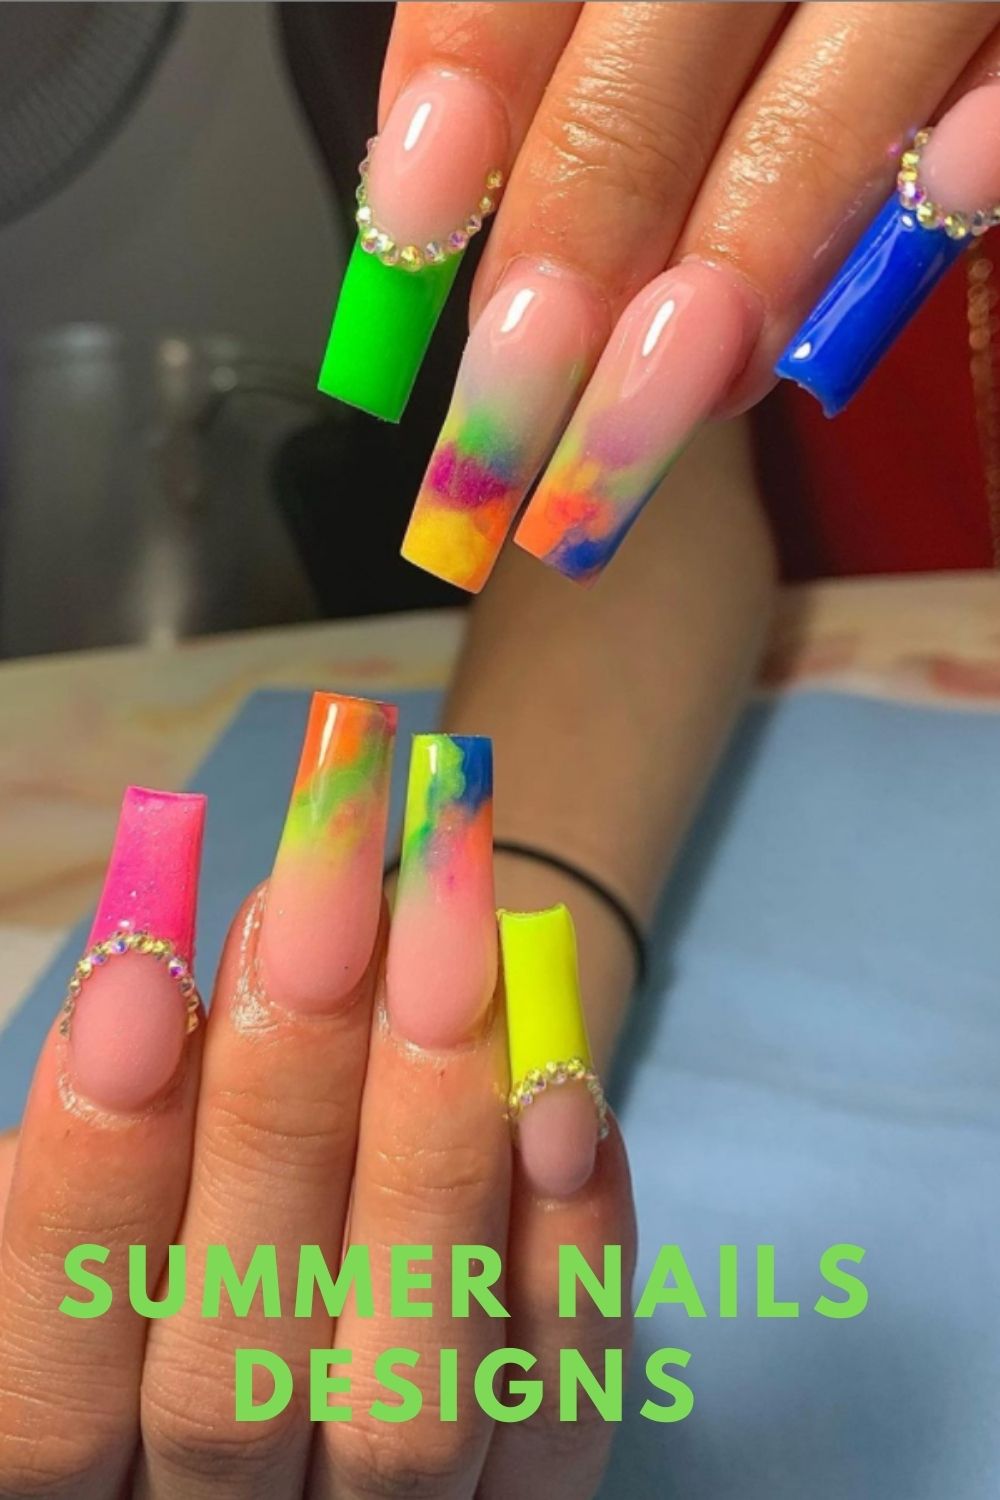 Long nails art